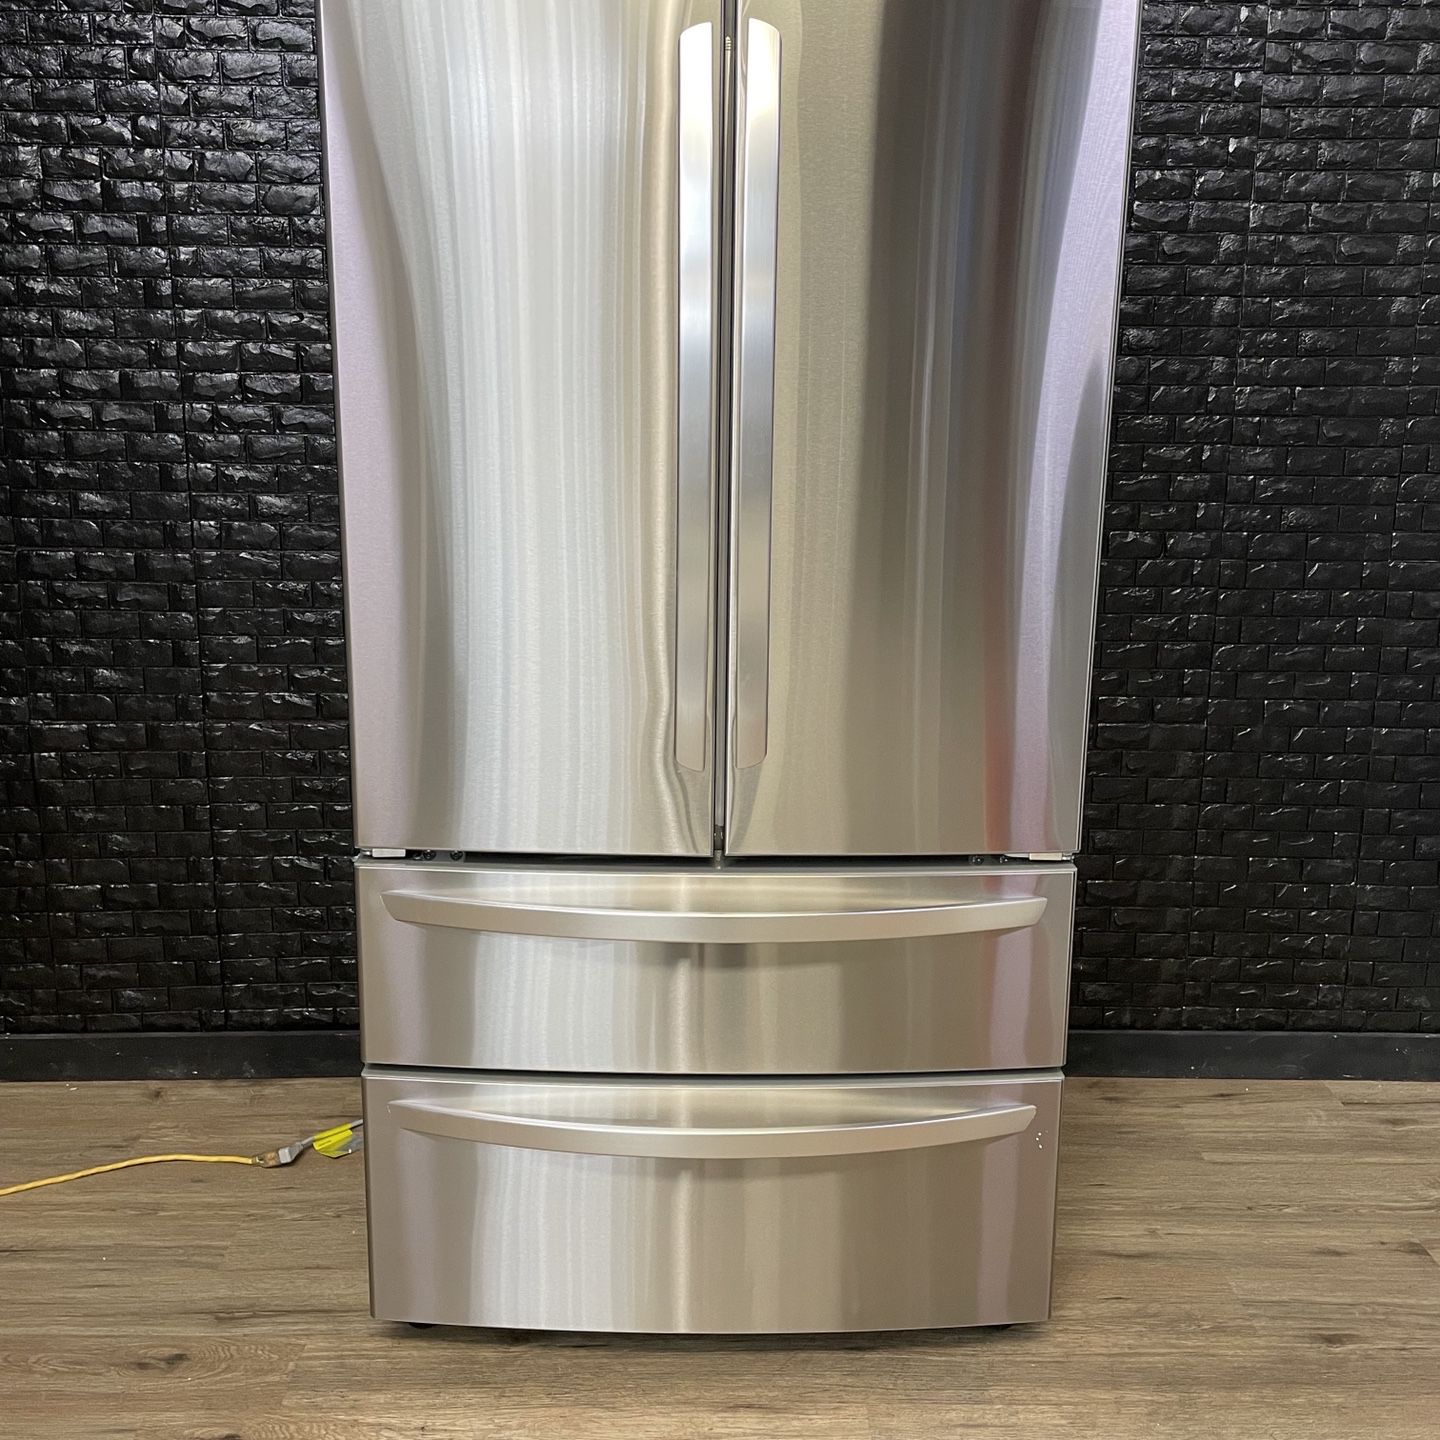 LG Refrigerator w/Warranty! R1693A